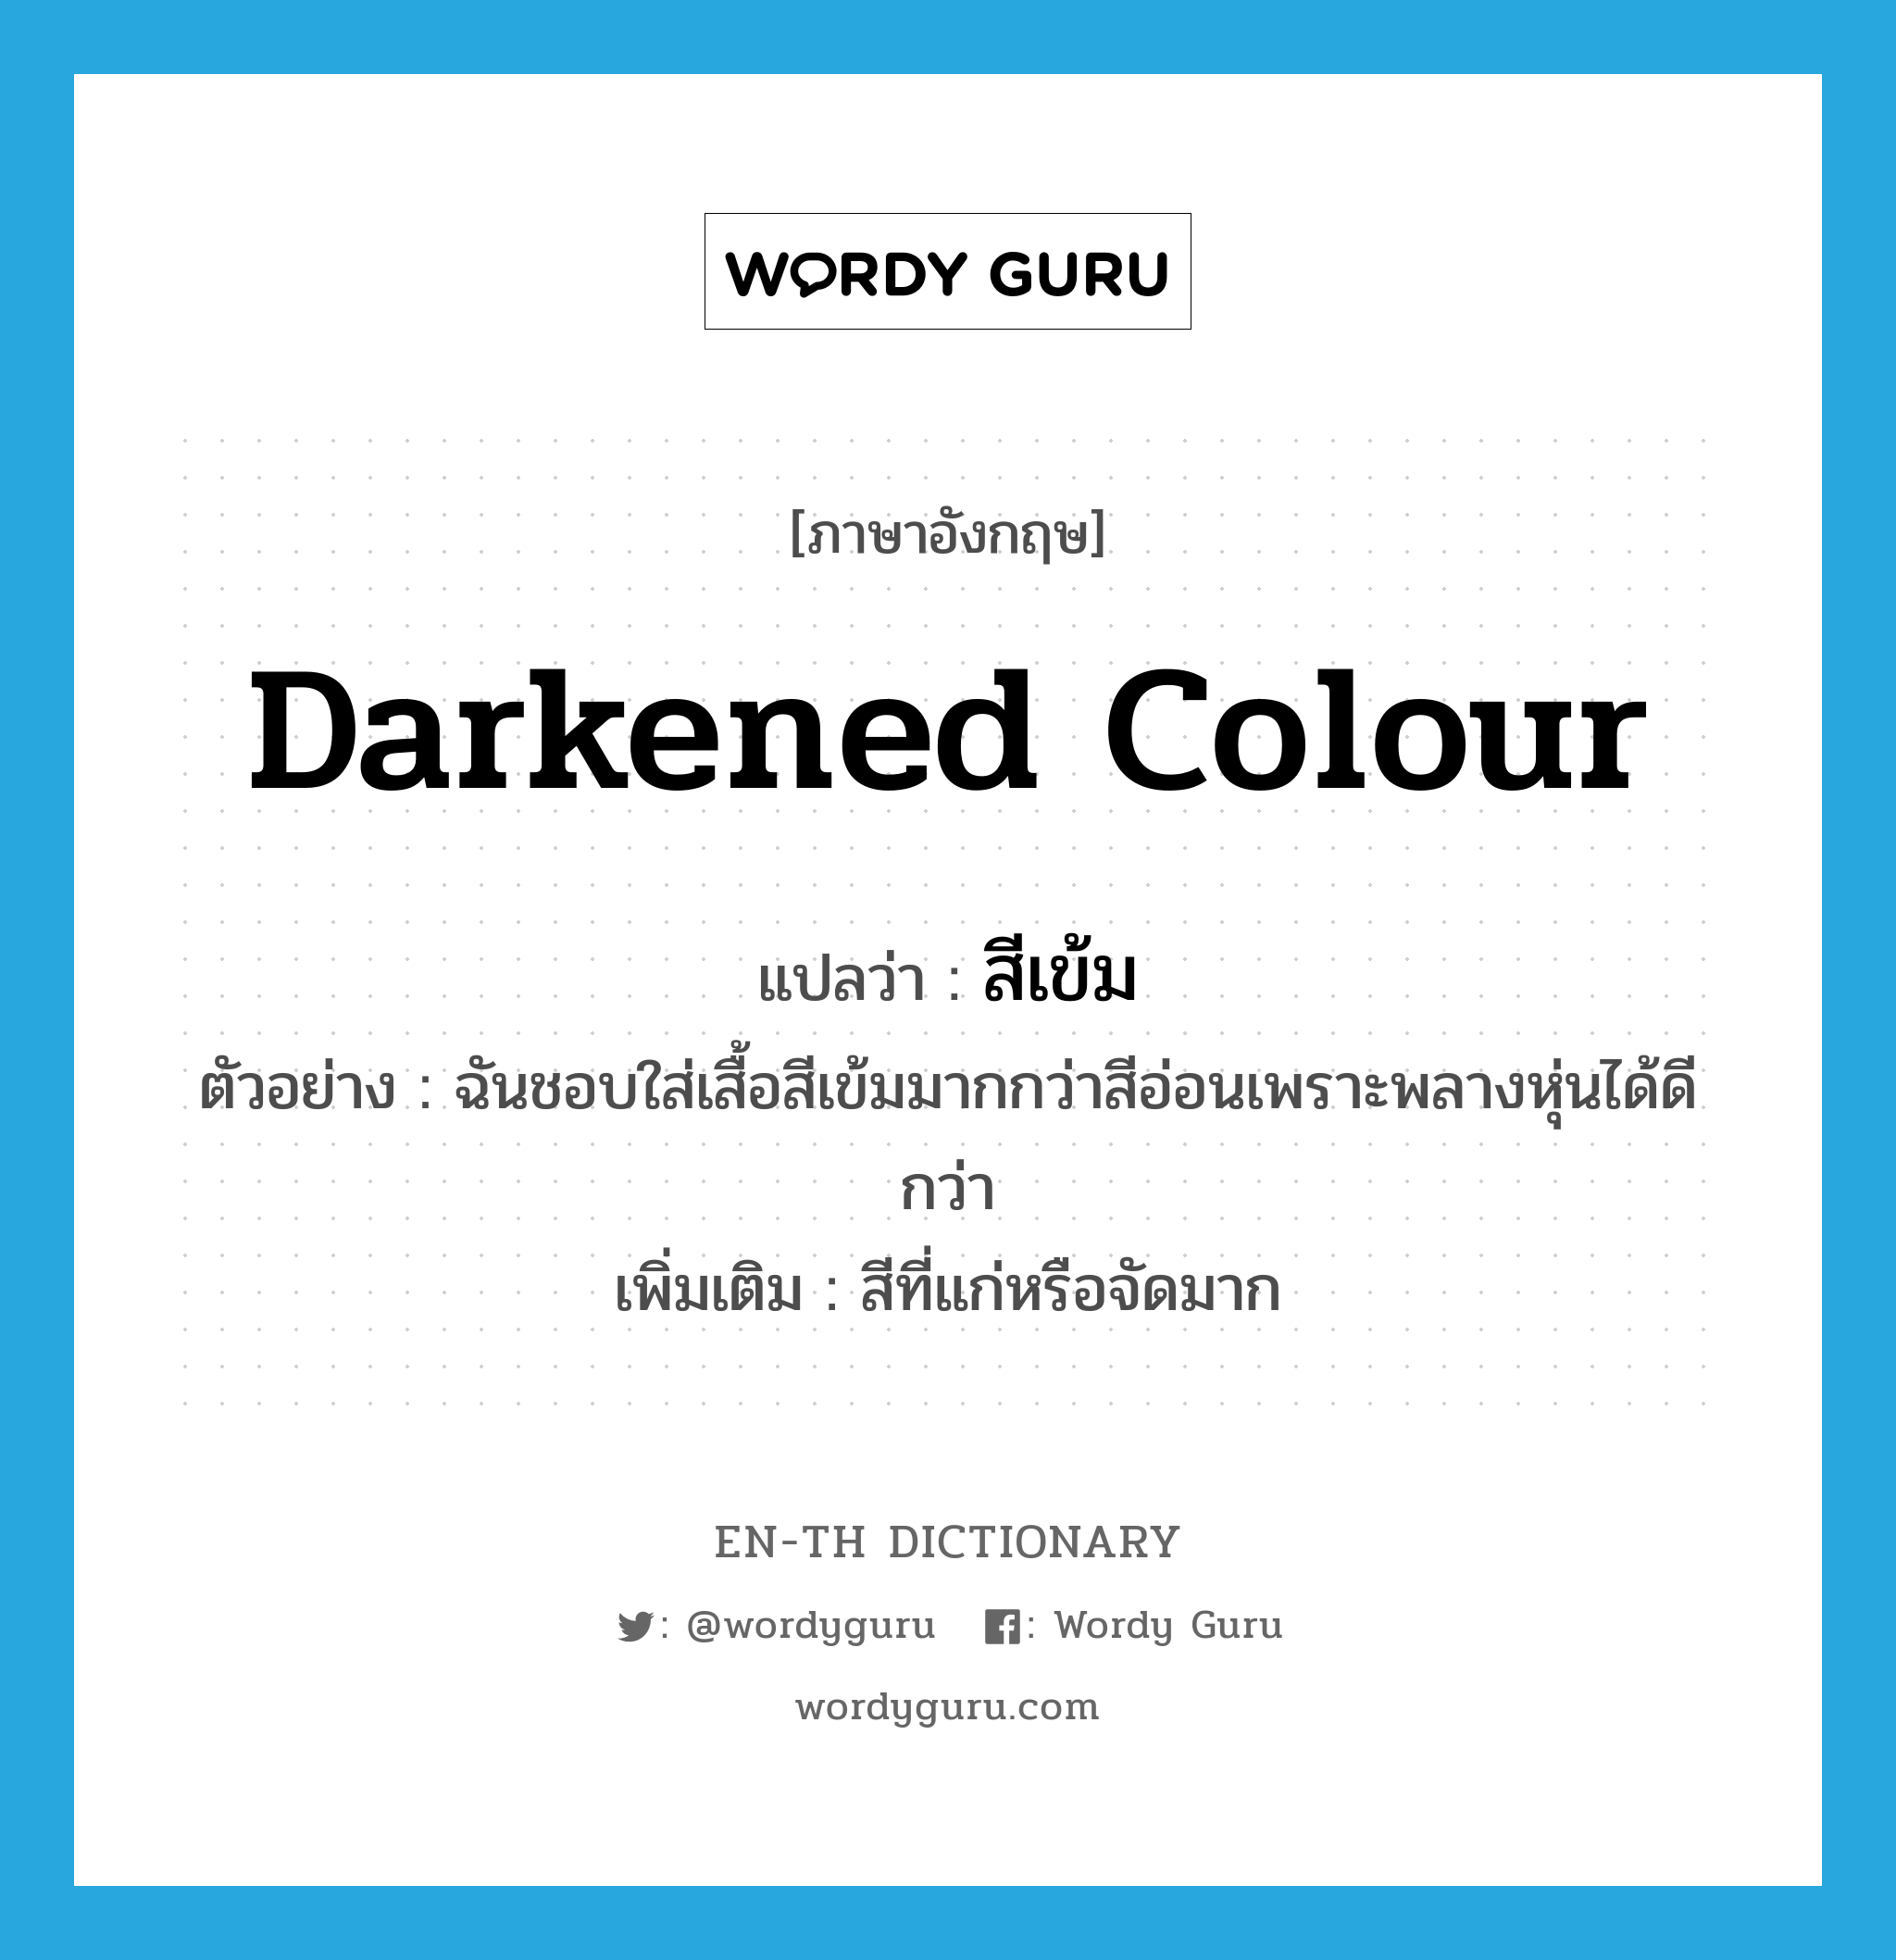 darkened colour แปลว่า?, คำศัพท์ภาษาอังกฤษ darkened colour แปลว่า สีเข้ม ประเภท ADJ ตัวอย่าง ฉันชอบใส่เสื้อสีเข้มมากกว่าสีอ่อนเพราะพลางหุ่นได้ดีกว่า เพิ่มเติม สีที่แก่หรือจัดมาก หมวด ADJ